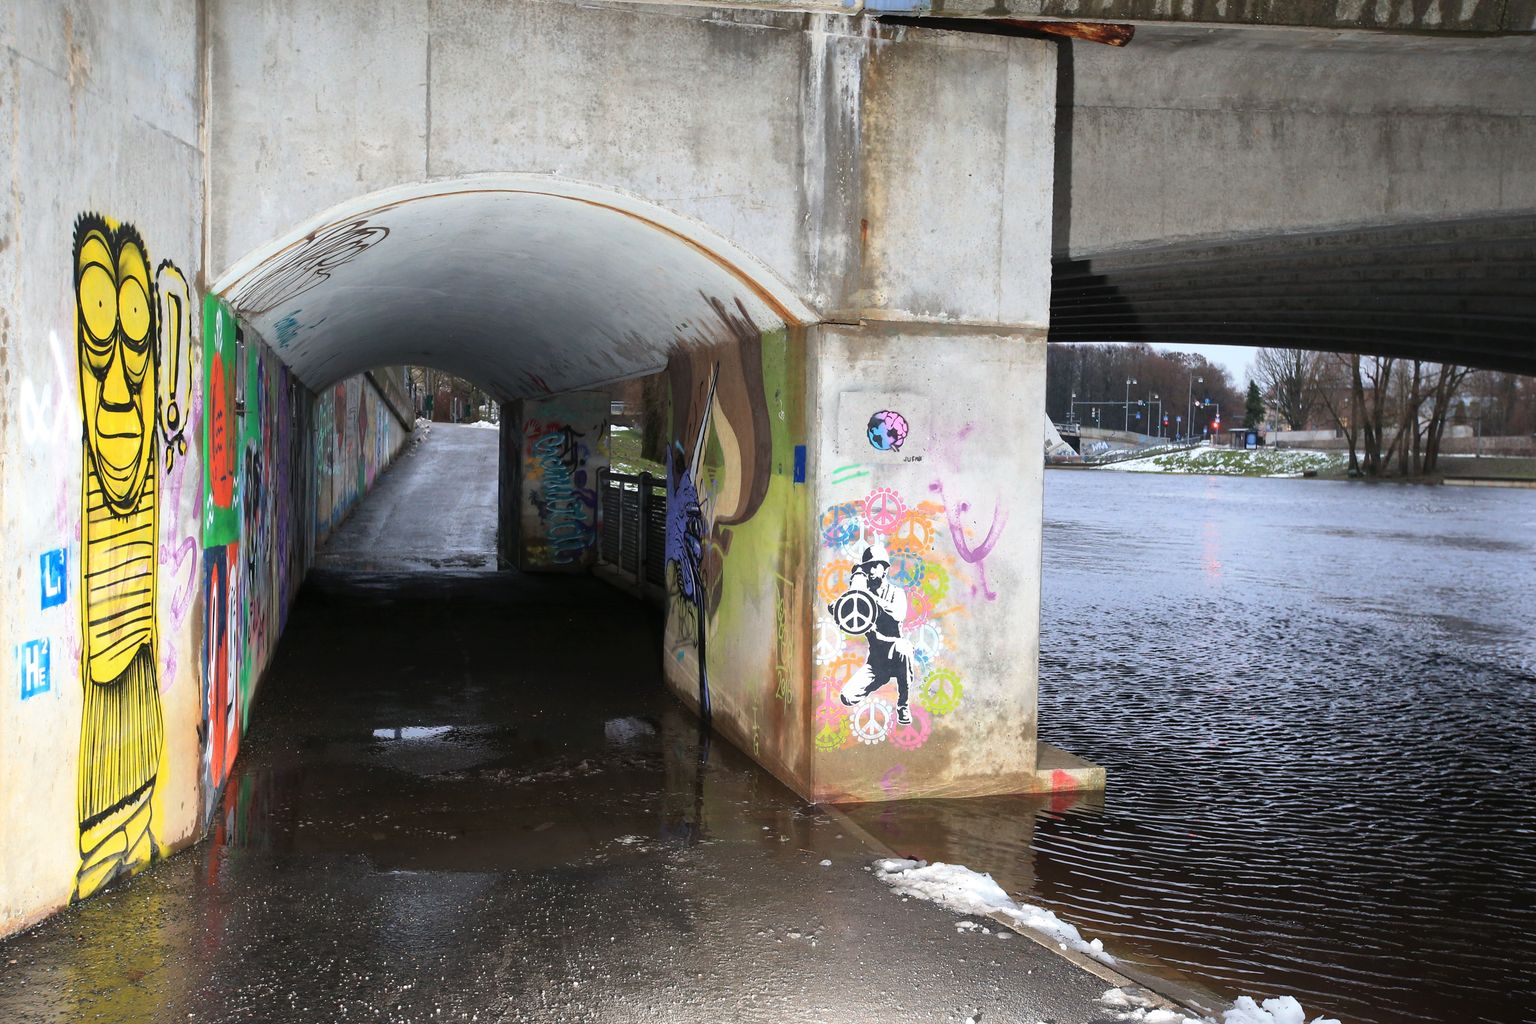 Juba detsembris oli Emajõgi kohati üle kallaste. Näiteks Kroonuaia silla jalakäijate tunnelist kuiva jalaga üle ei saanud.